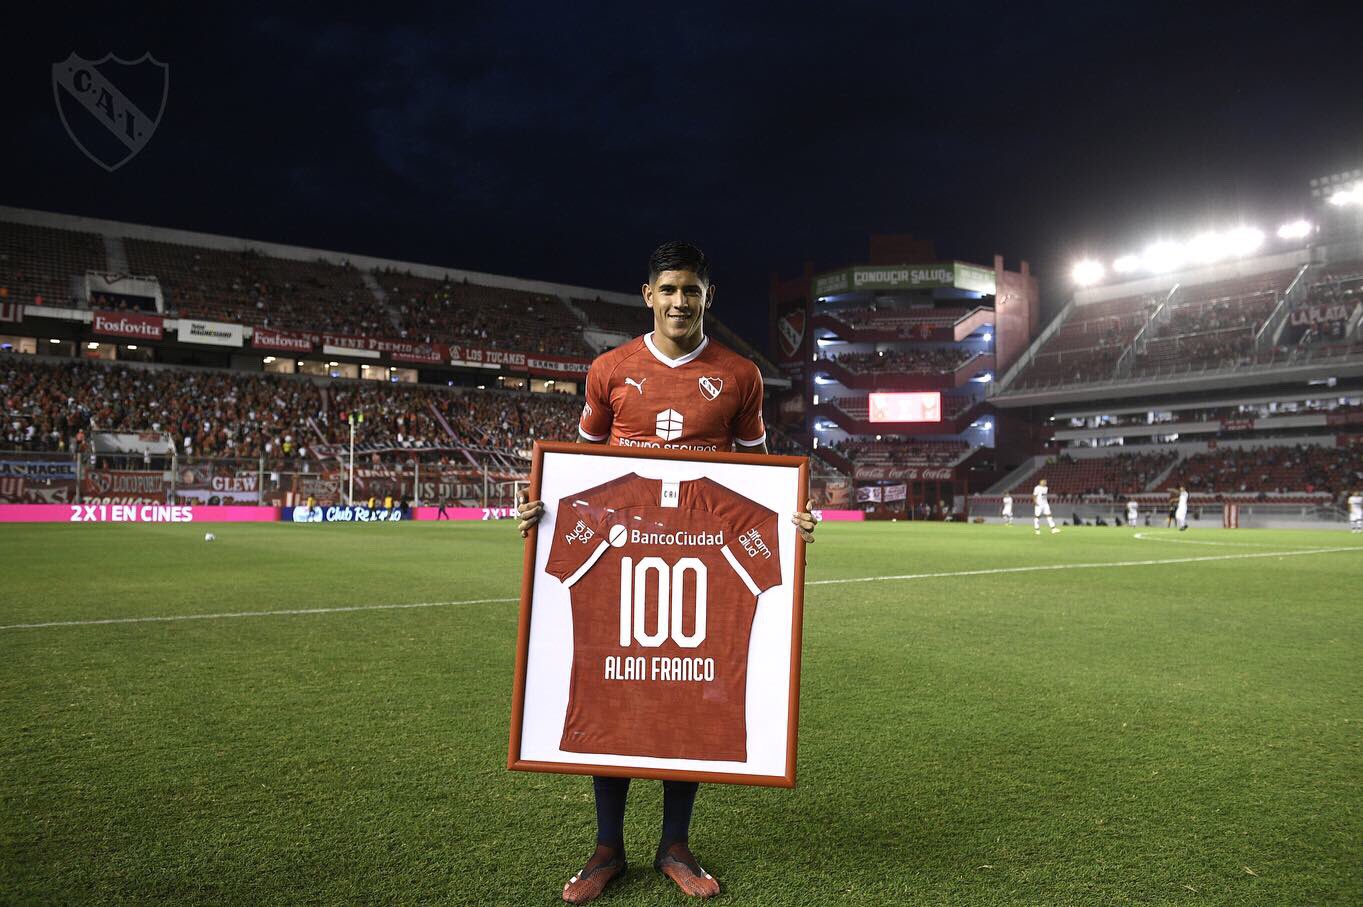 Alan Franco (Independiente) - zagueiro de 23 anos - valor de mercado: 24 milhões de reais.